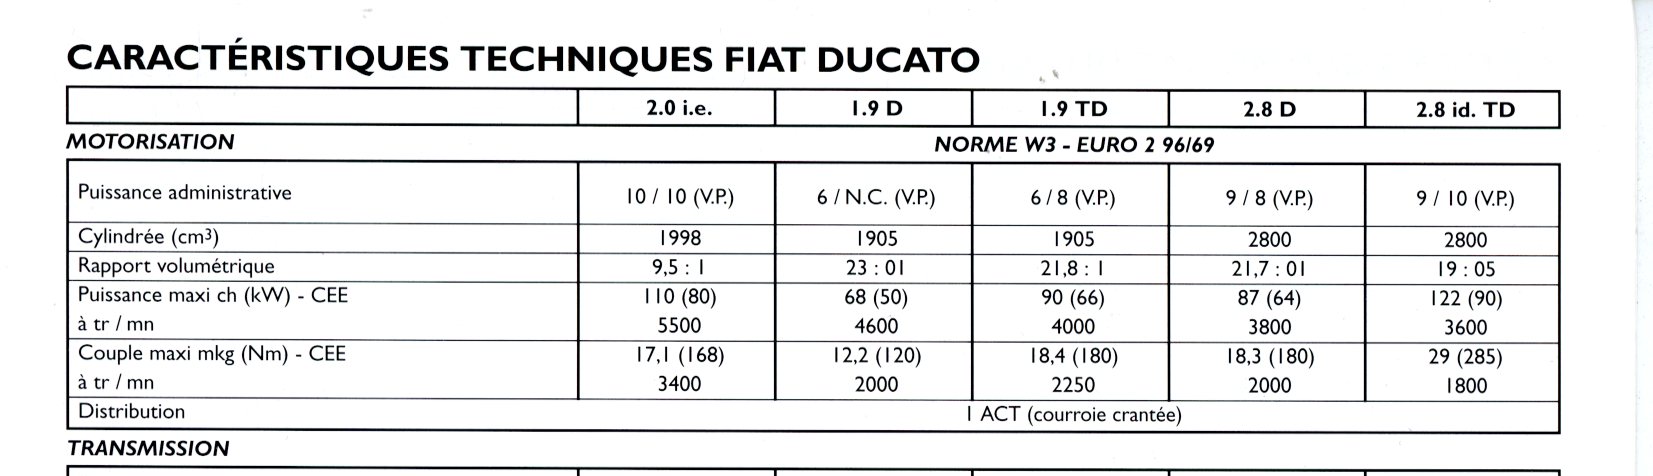 BROCHURE FIAT DUCATO - EDITION 1998